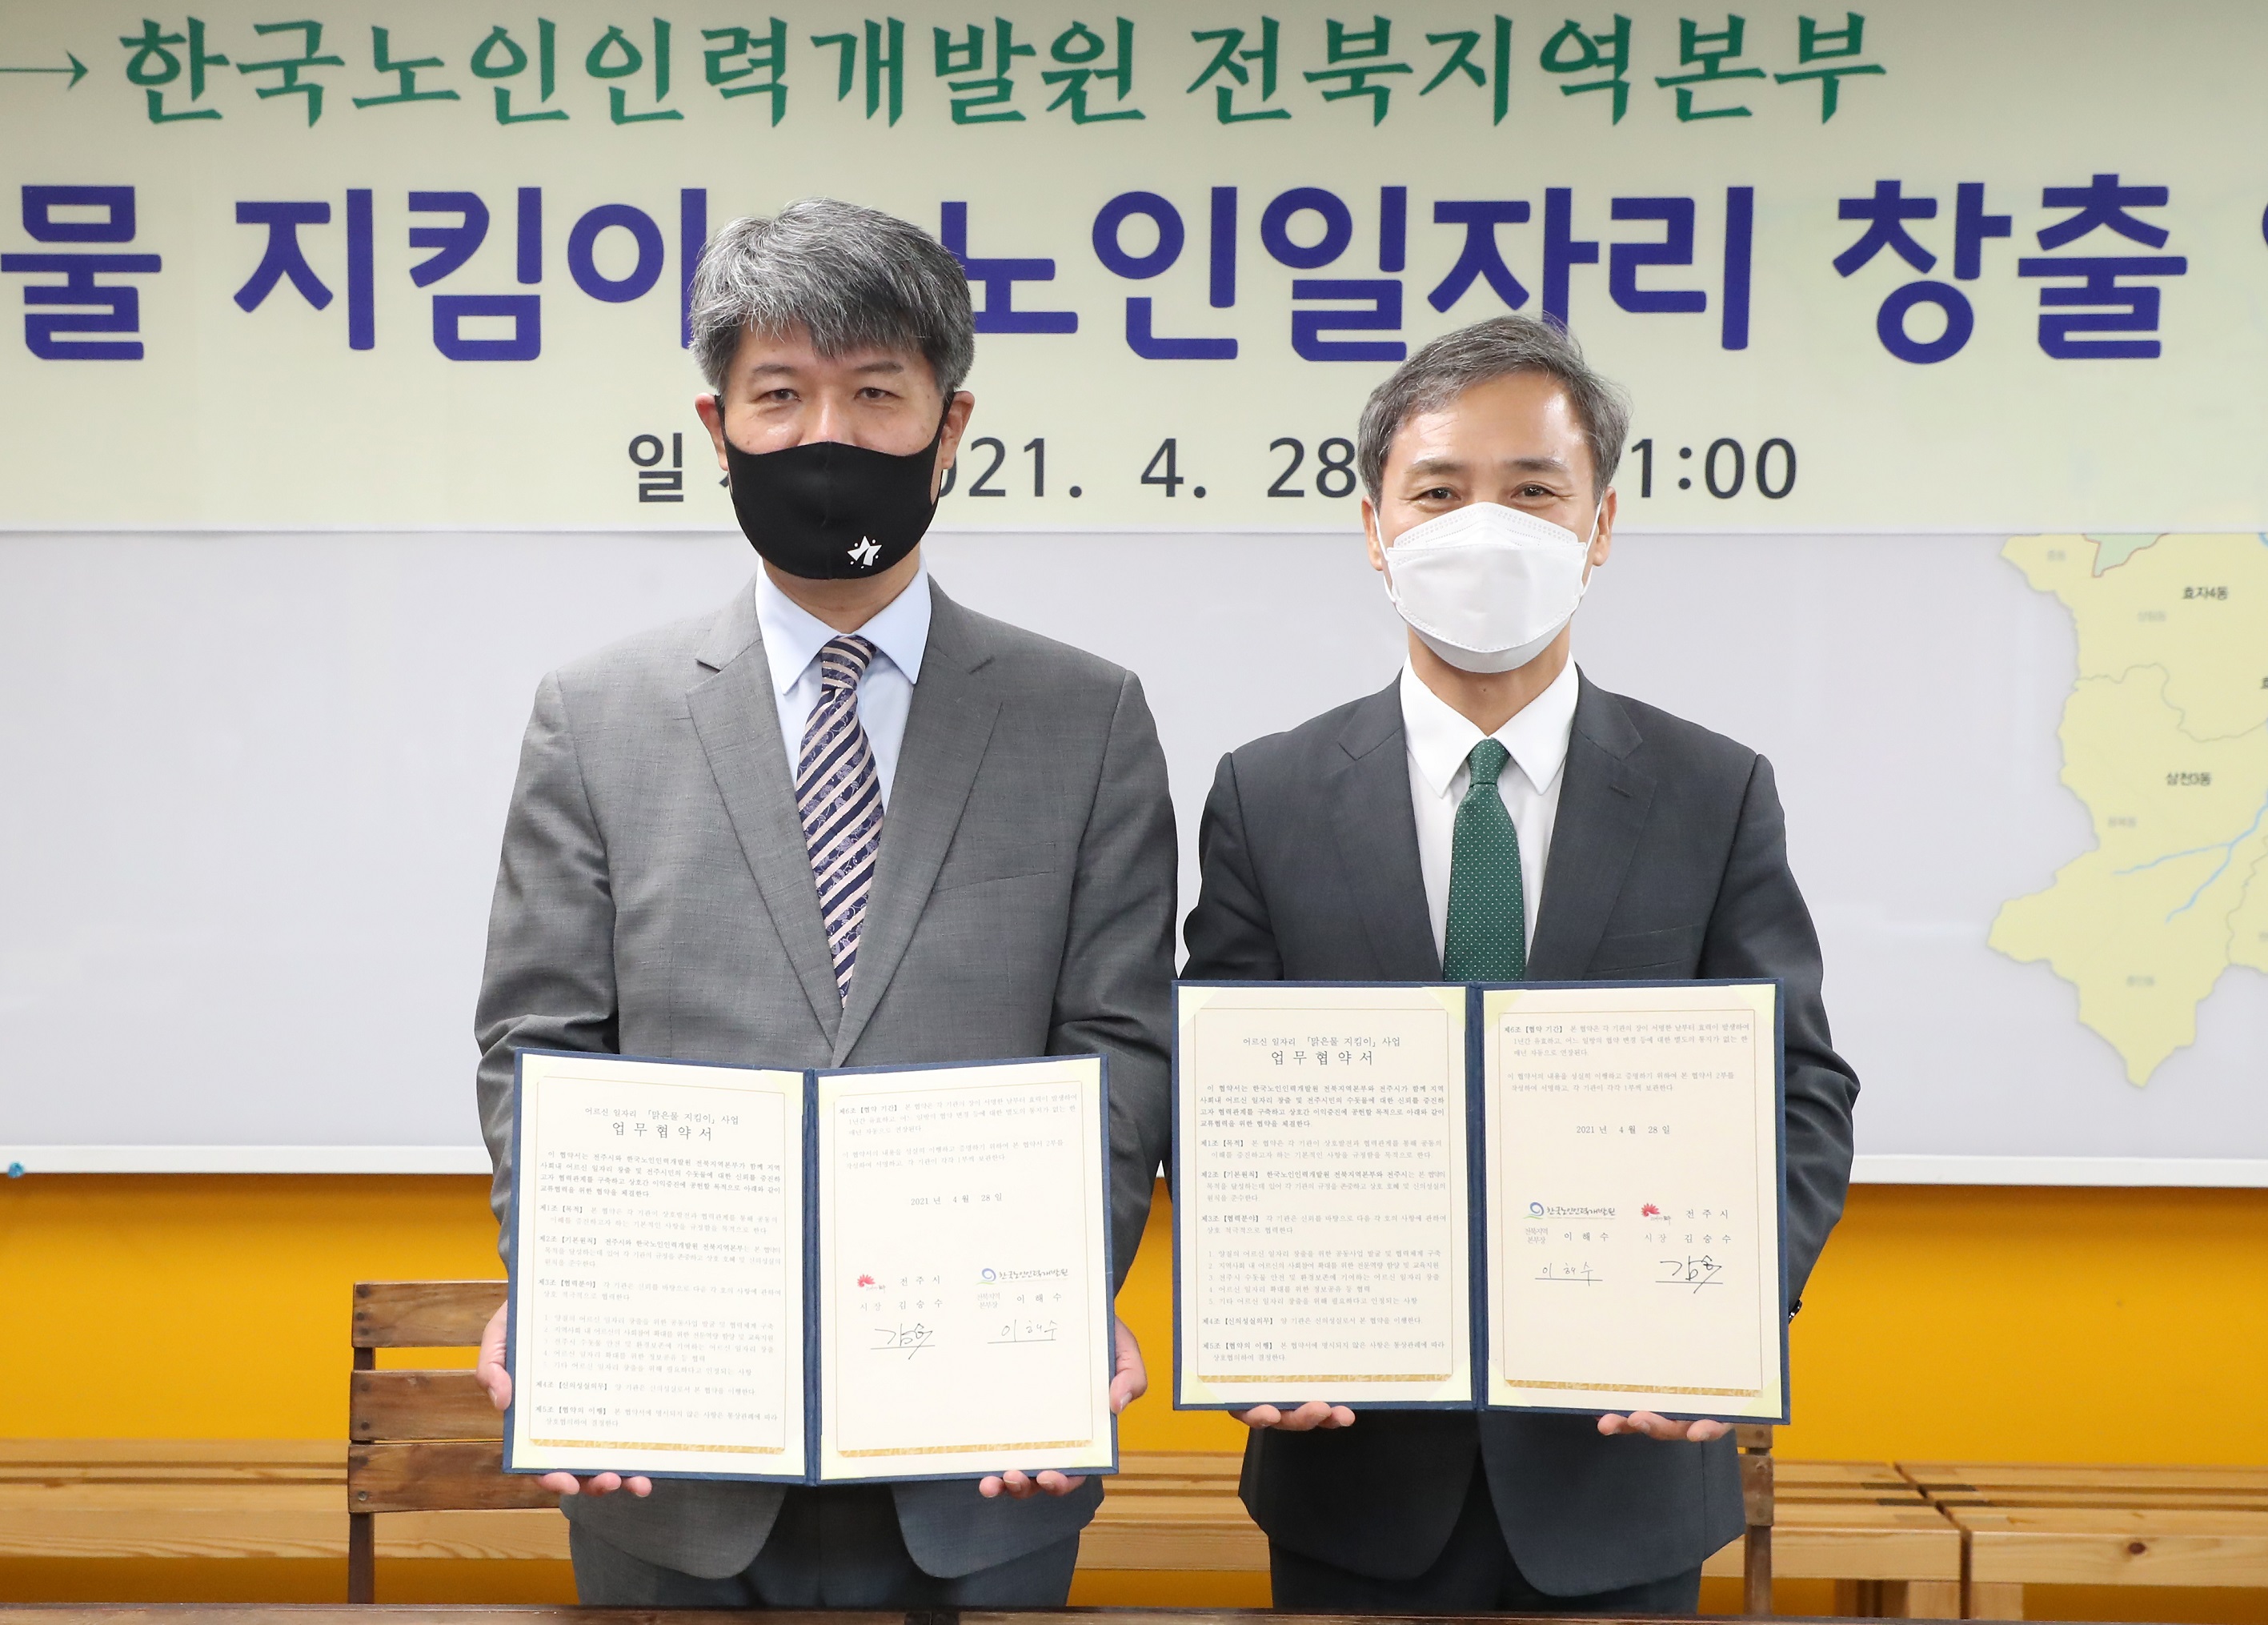 한국노인인인력개발원 전북지역본부 이해수 본부장(사진 좌측)과 전주시 김승수 시장(사진 우측)이 협약서를 들고 정면을 바라보며 서있는 모습